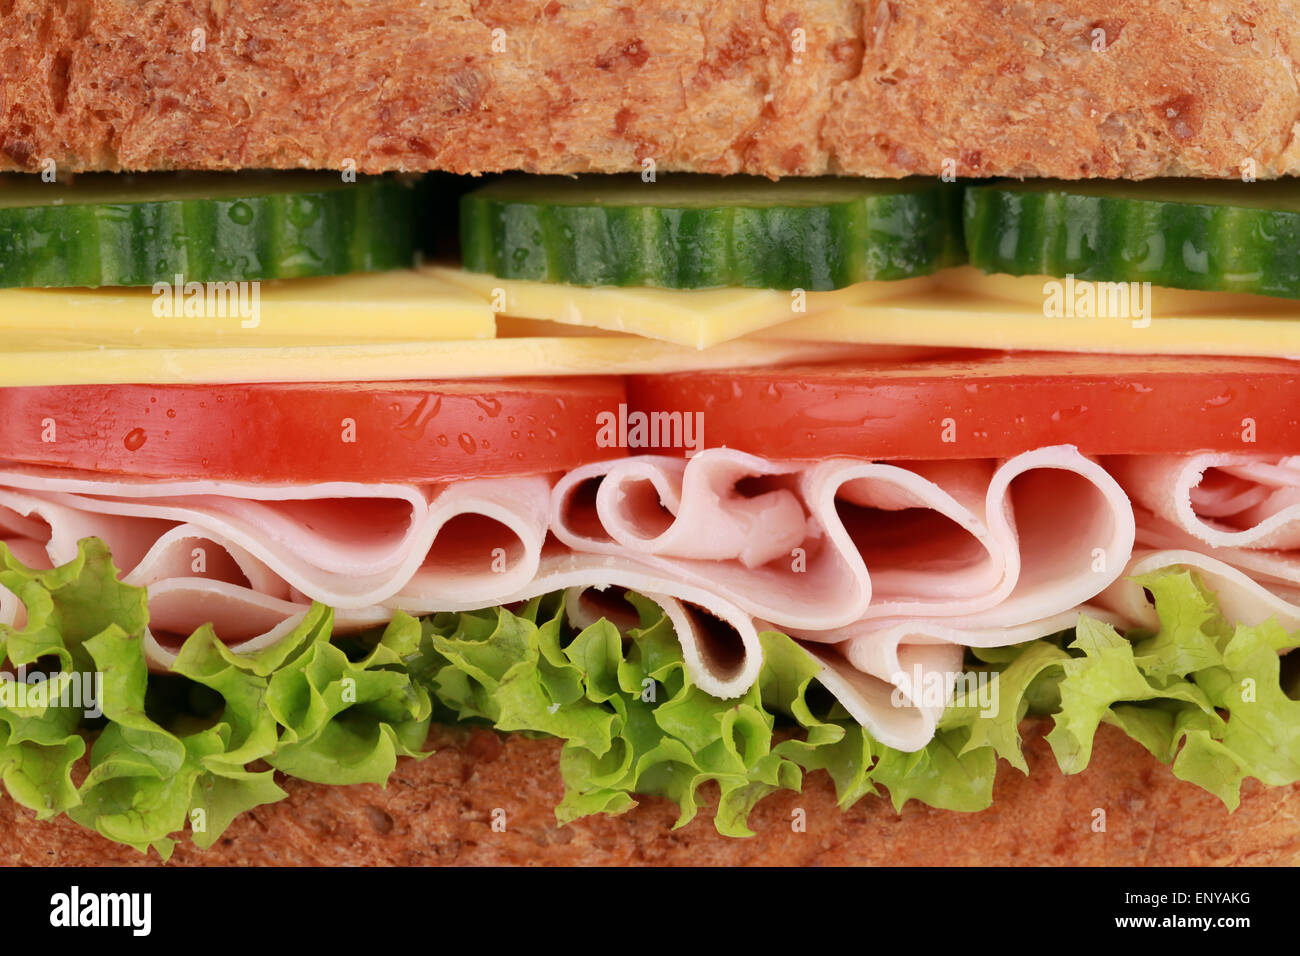 Nahaufnahme eines Sandwich mit Schinken Stock Photo